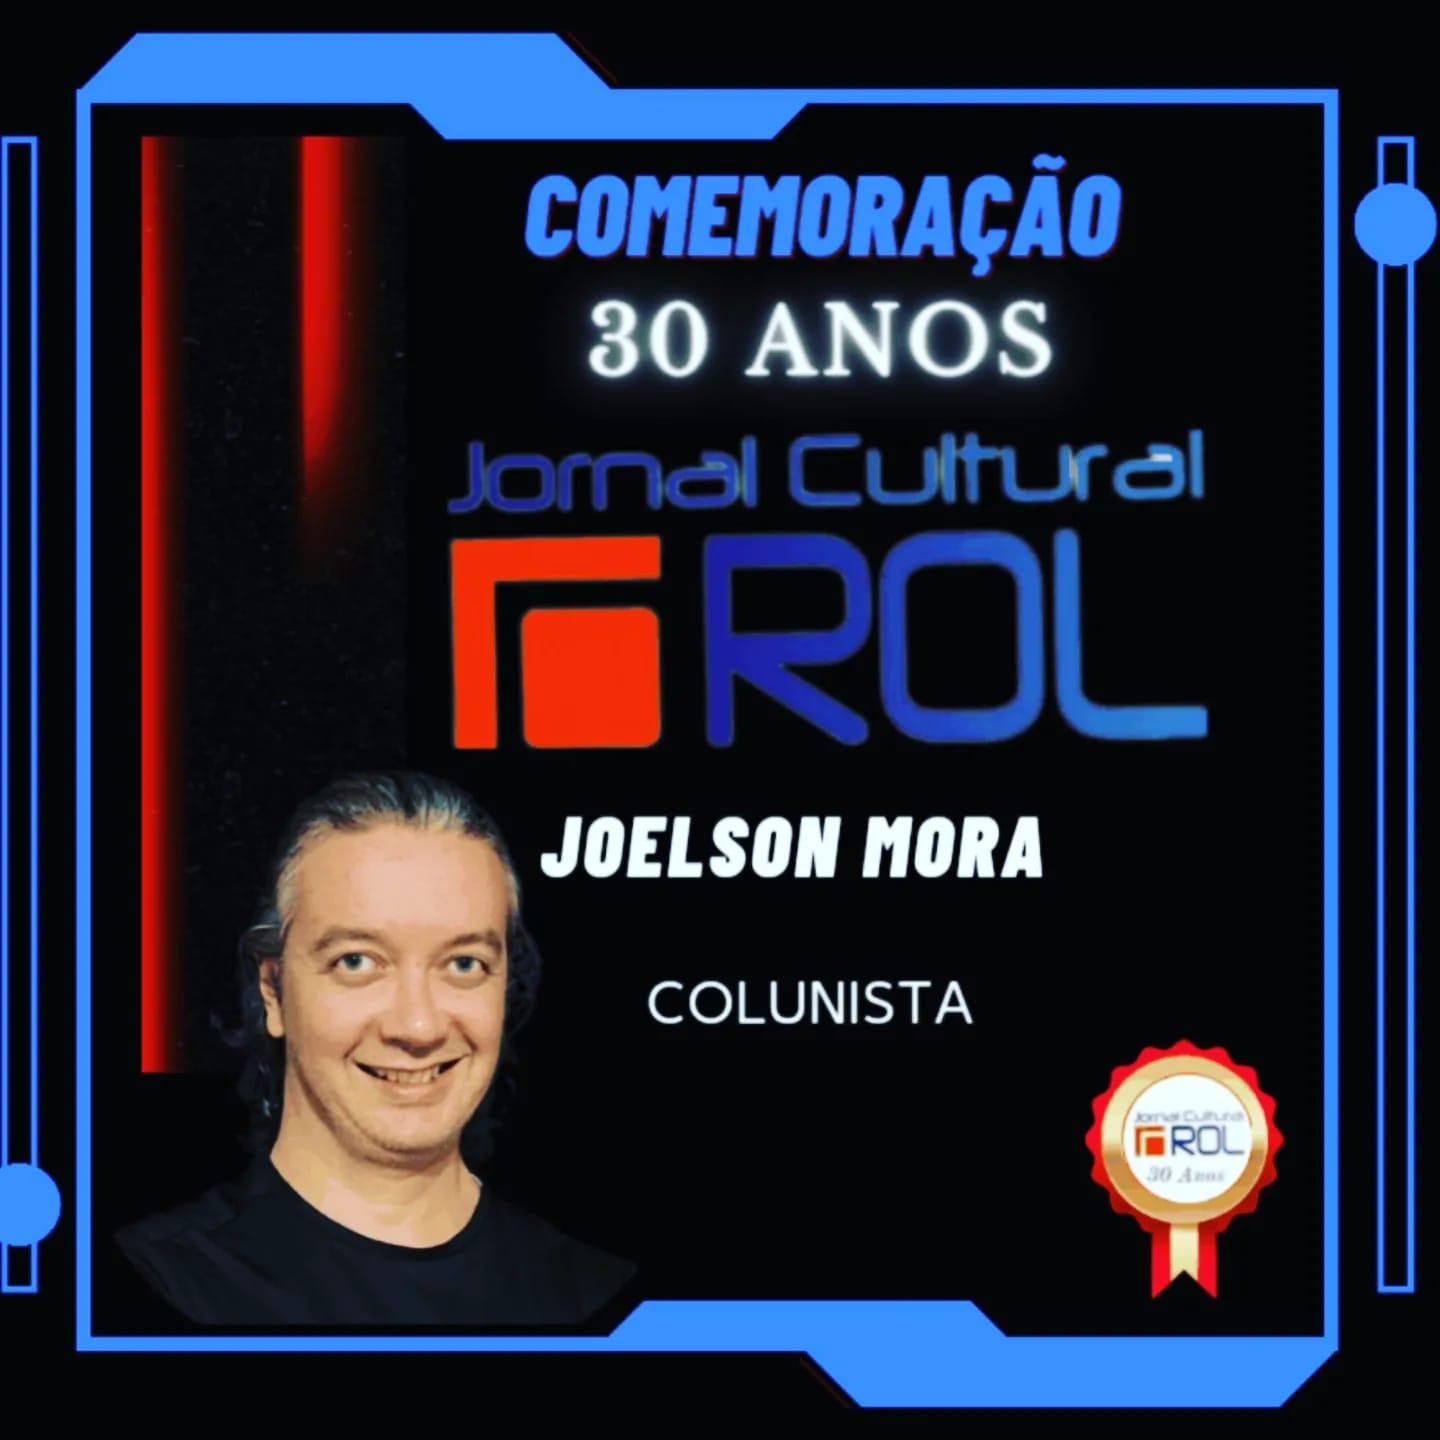 Card comemorativo dos 30 anos do Jornal Cultural ROL Joelson Mora